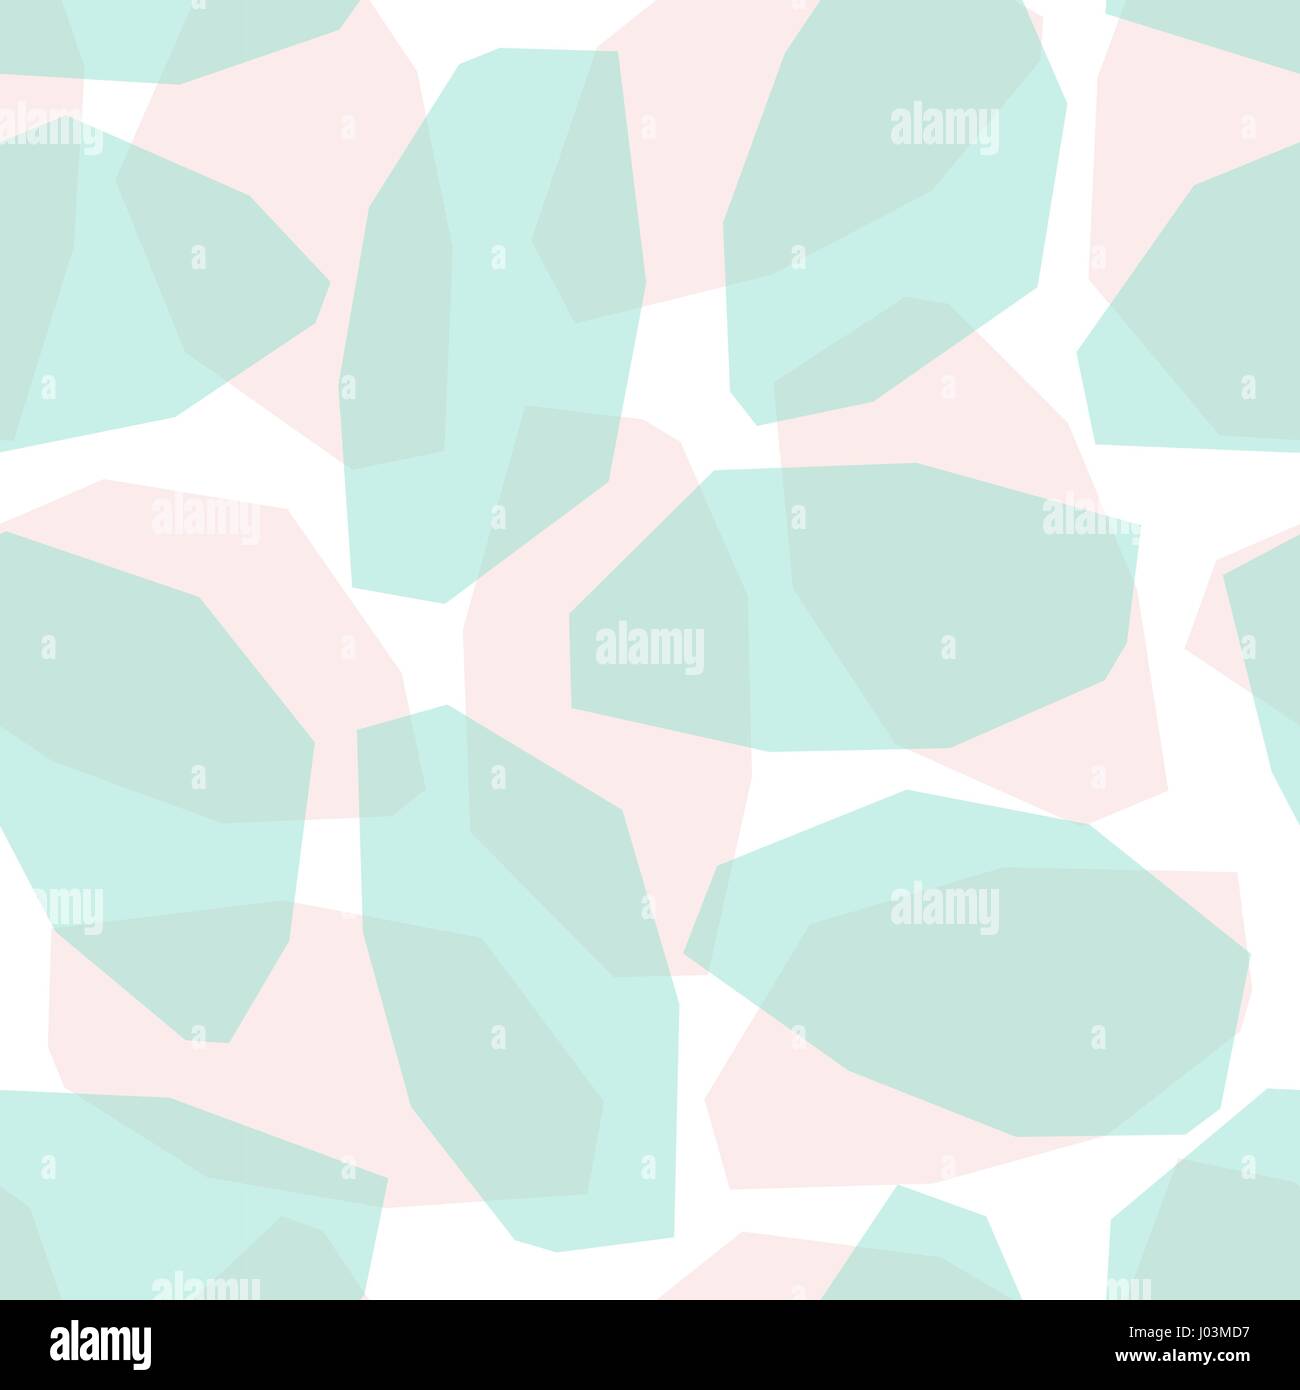 Nahtlose Muster mit geometrischen Formen in Blush Pink und grün auf weißem Hintergrund. Abstrakter Stil Textil, Geschenkpapier, Wand-Kunst-Design. Stock Vektor